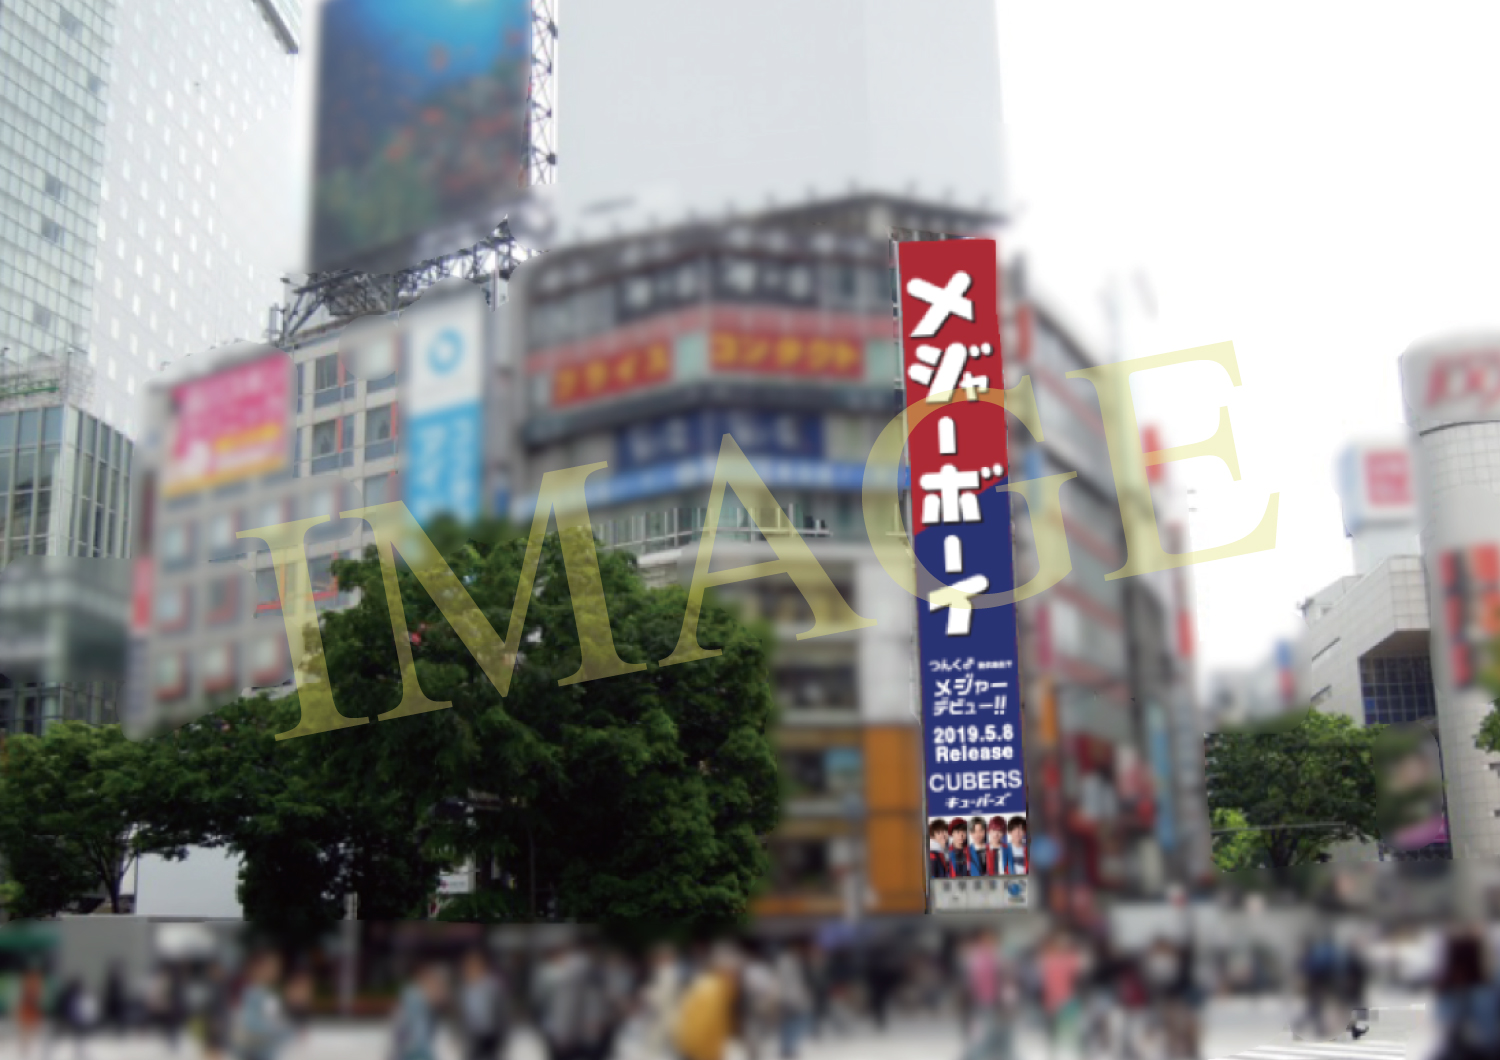 ☆★渋谷駅前 スクランブル交差点横 ロングボードで「メジャーボーイ 」の巨大看板(4/30〜5/14)の掲示が大決定！☆★